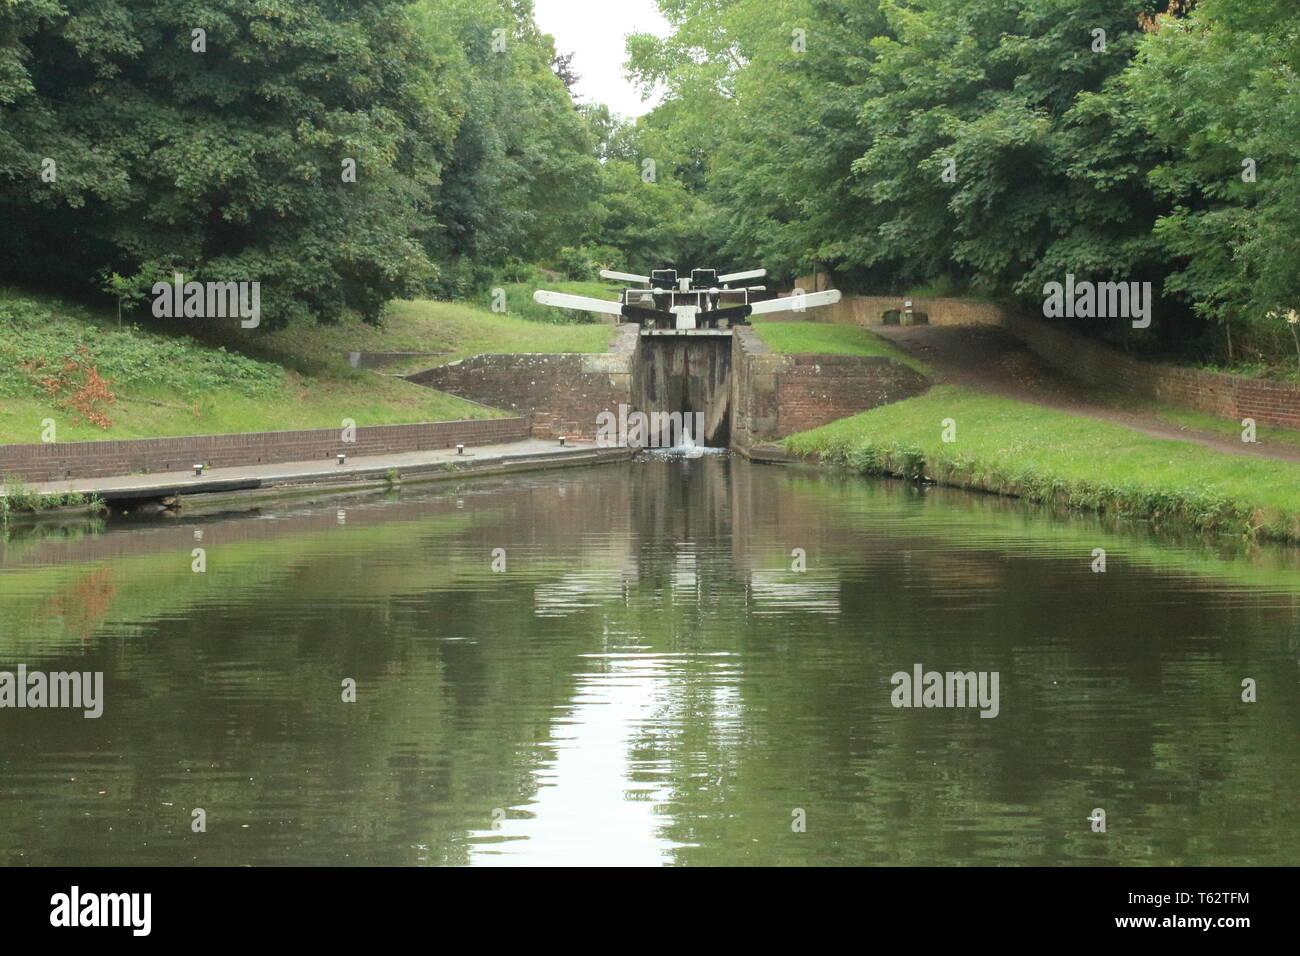 Un vol d'écluses s'étendant sur la colline Le canal Kennet & Avon au Royaume-Uni avec le eau fixe donnant un sentiment de paix et de calme Banque D'Images